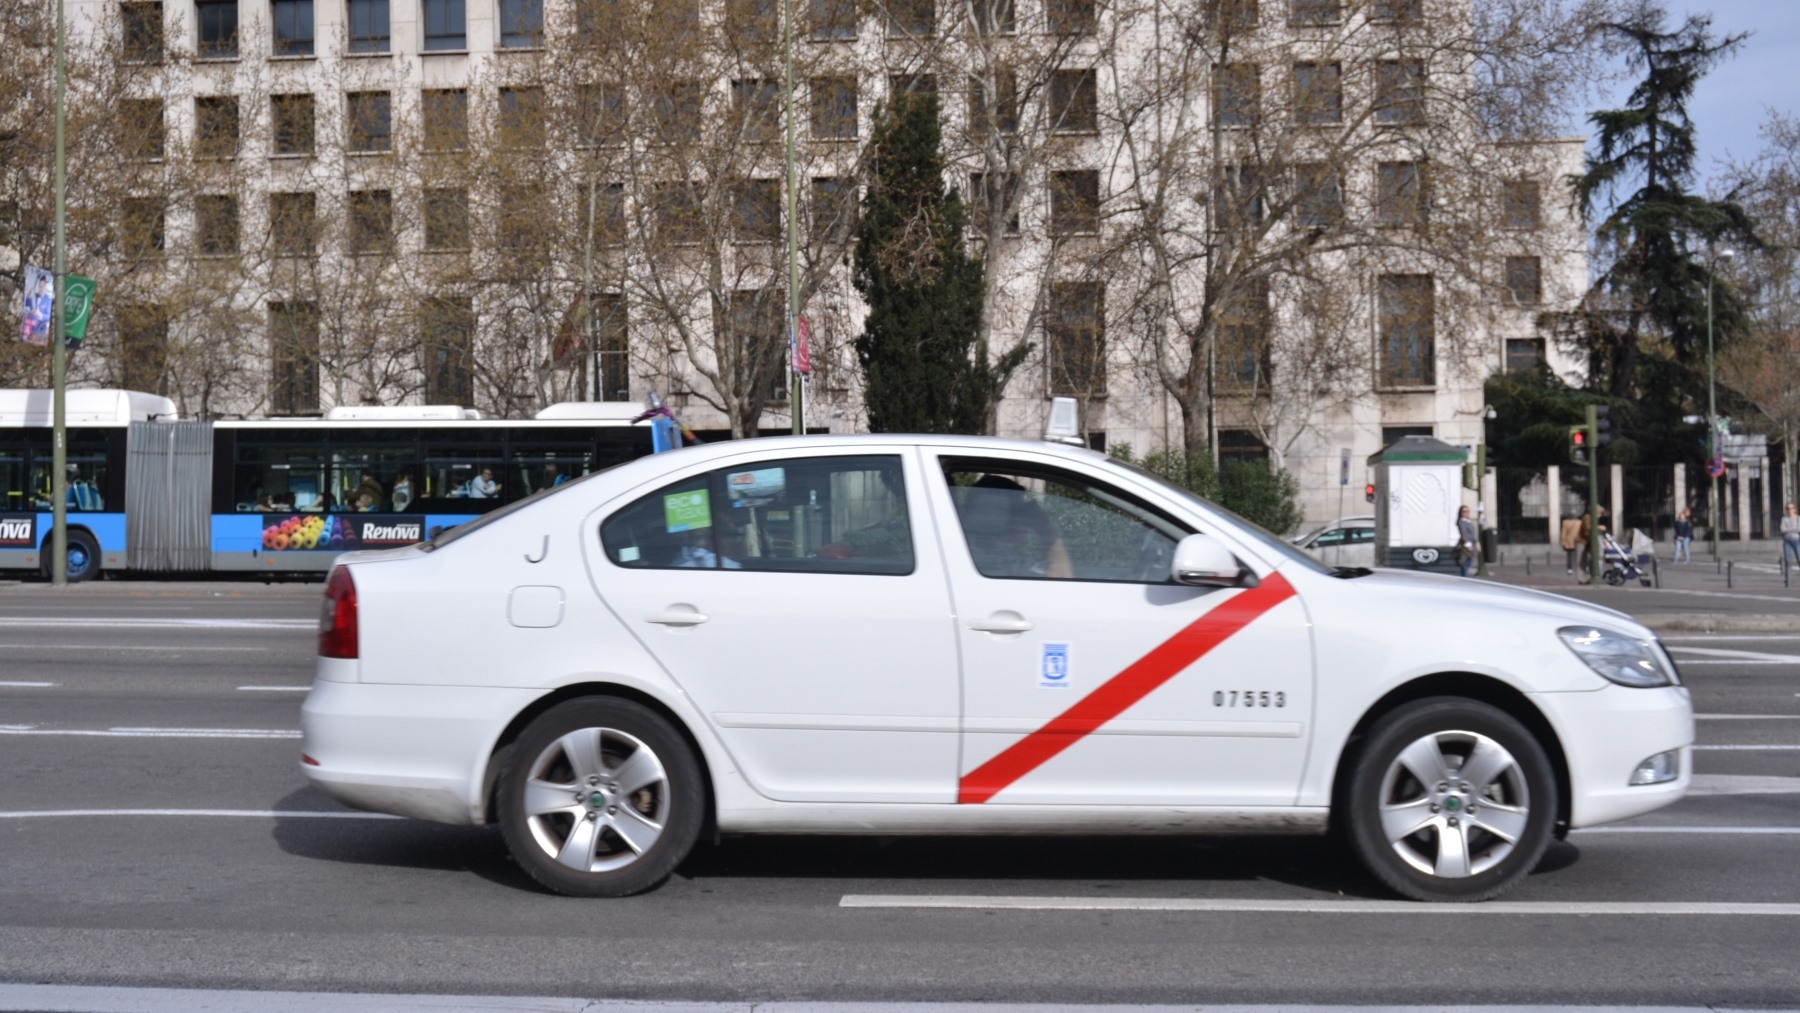 ¿Por qué los taxis en Madrid son blancos con una línea roja?